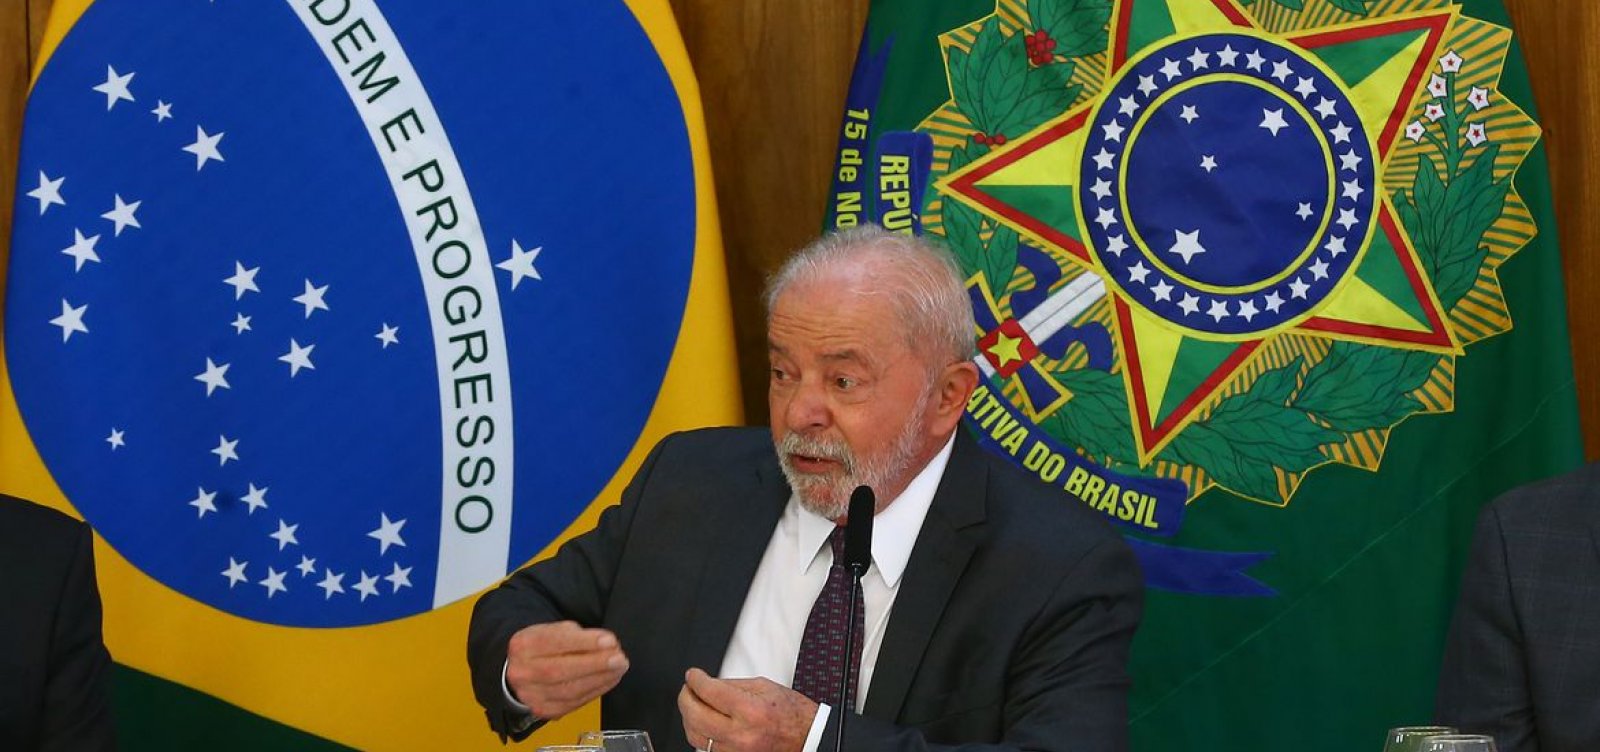 Programa para renegociação de dívidas será anunciado na próxima semana, indica Lula